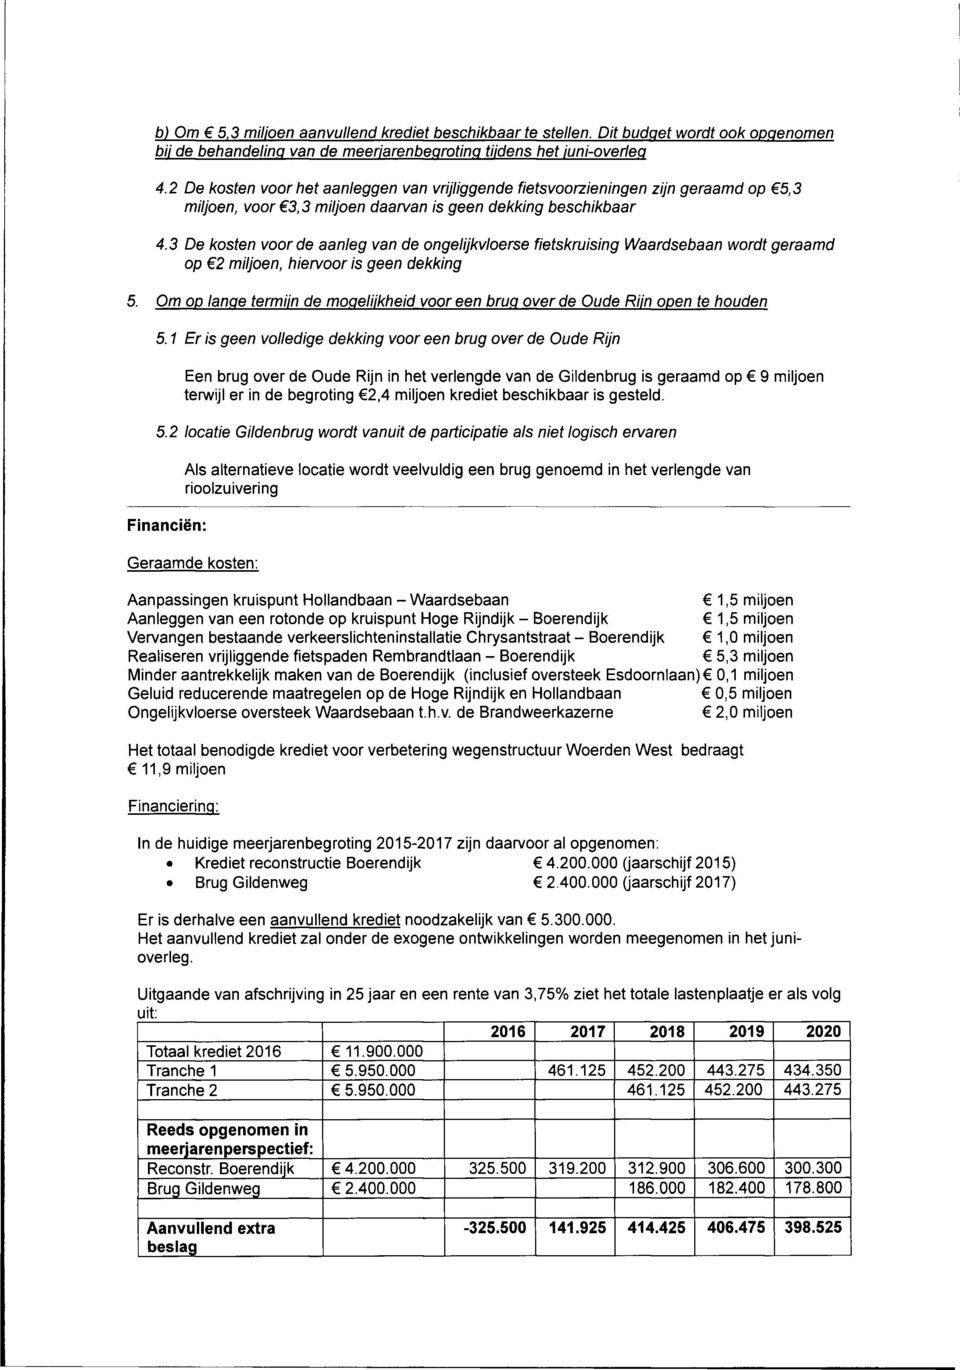 3 De kosten voorde aanleg van de ongelijkvloerse fietskruising Waardsebaan wordt geraamd op 62 miljoen, hiervoor is geen dekking 5.